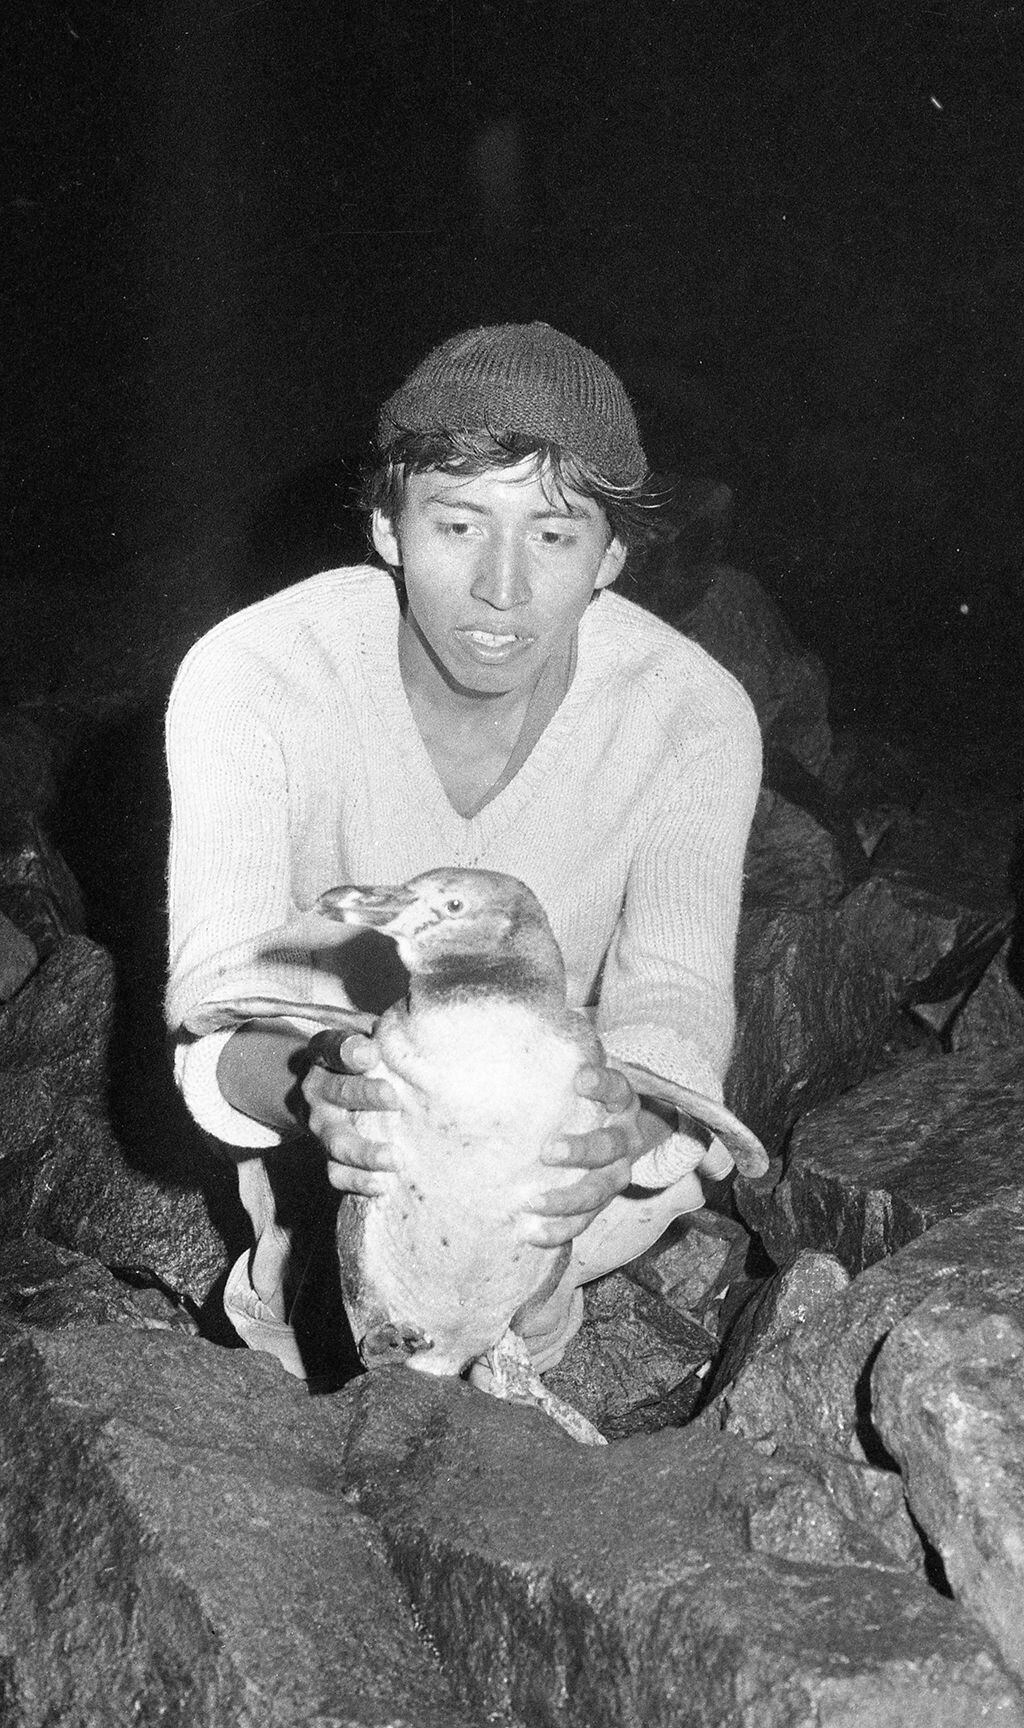 Miguel Angel Mosoco muestra al pingüino que encontró varado en el mar limeño. (Foto: Carlos del Rosario/GEC Archivo Histórico)